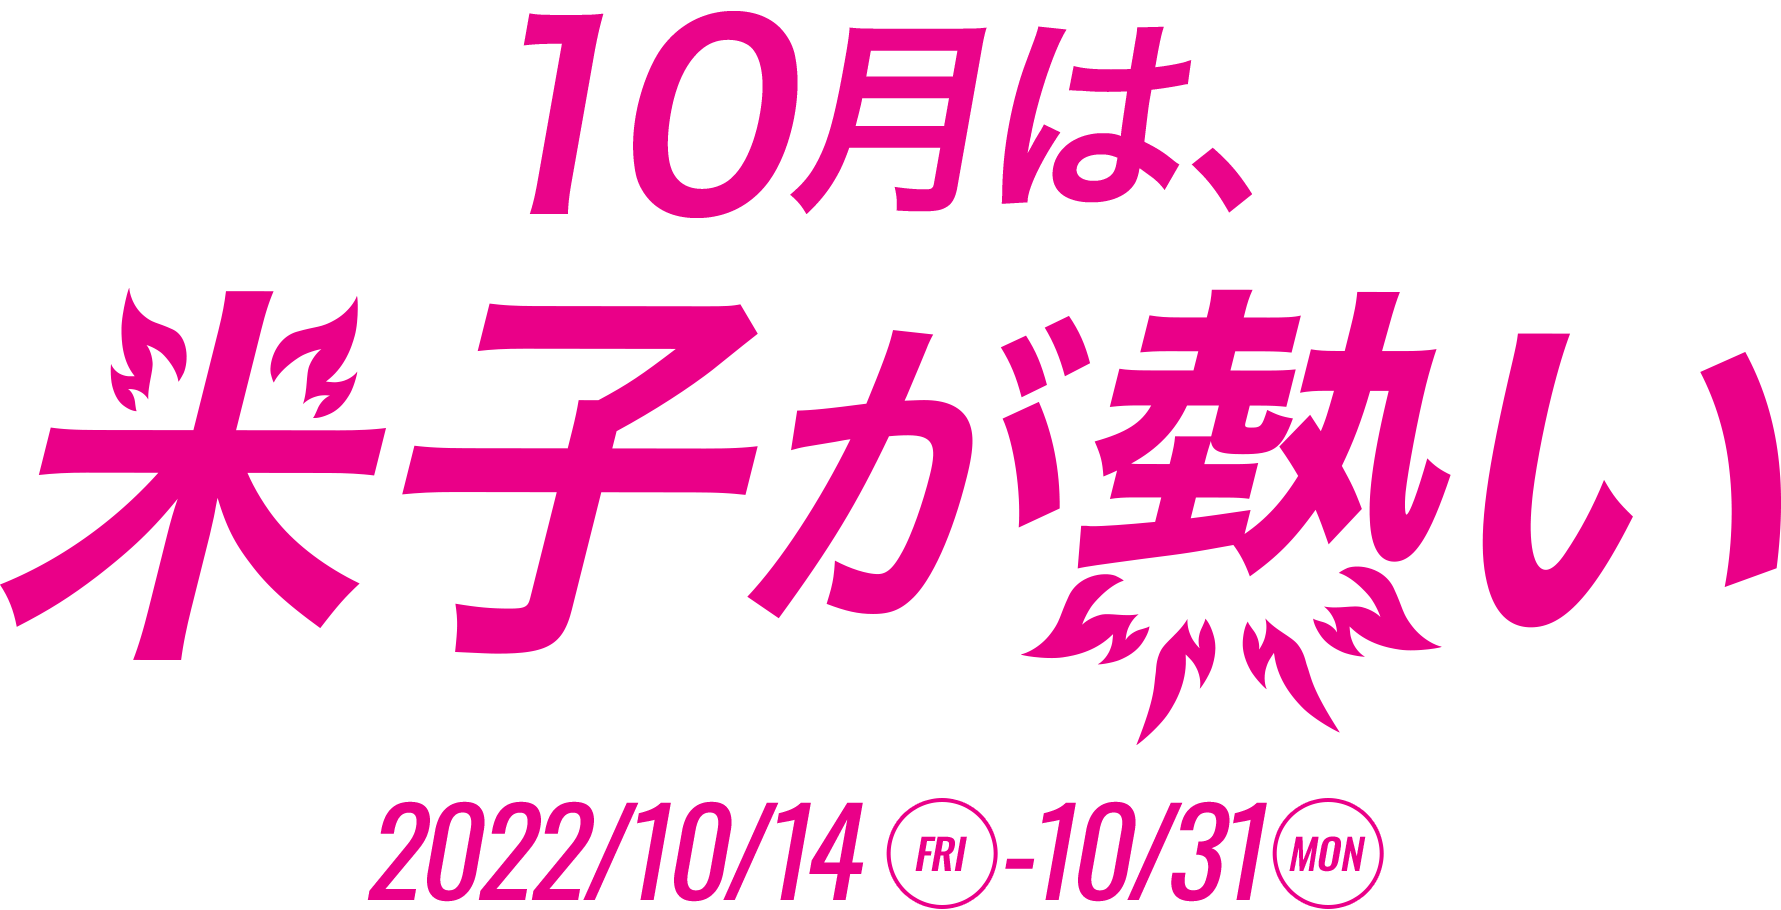 米子が熱い 2022/10/14(火)- 10/31(月)